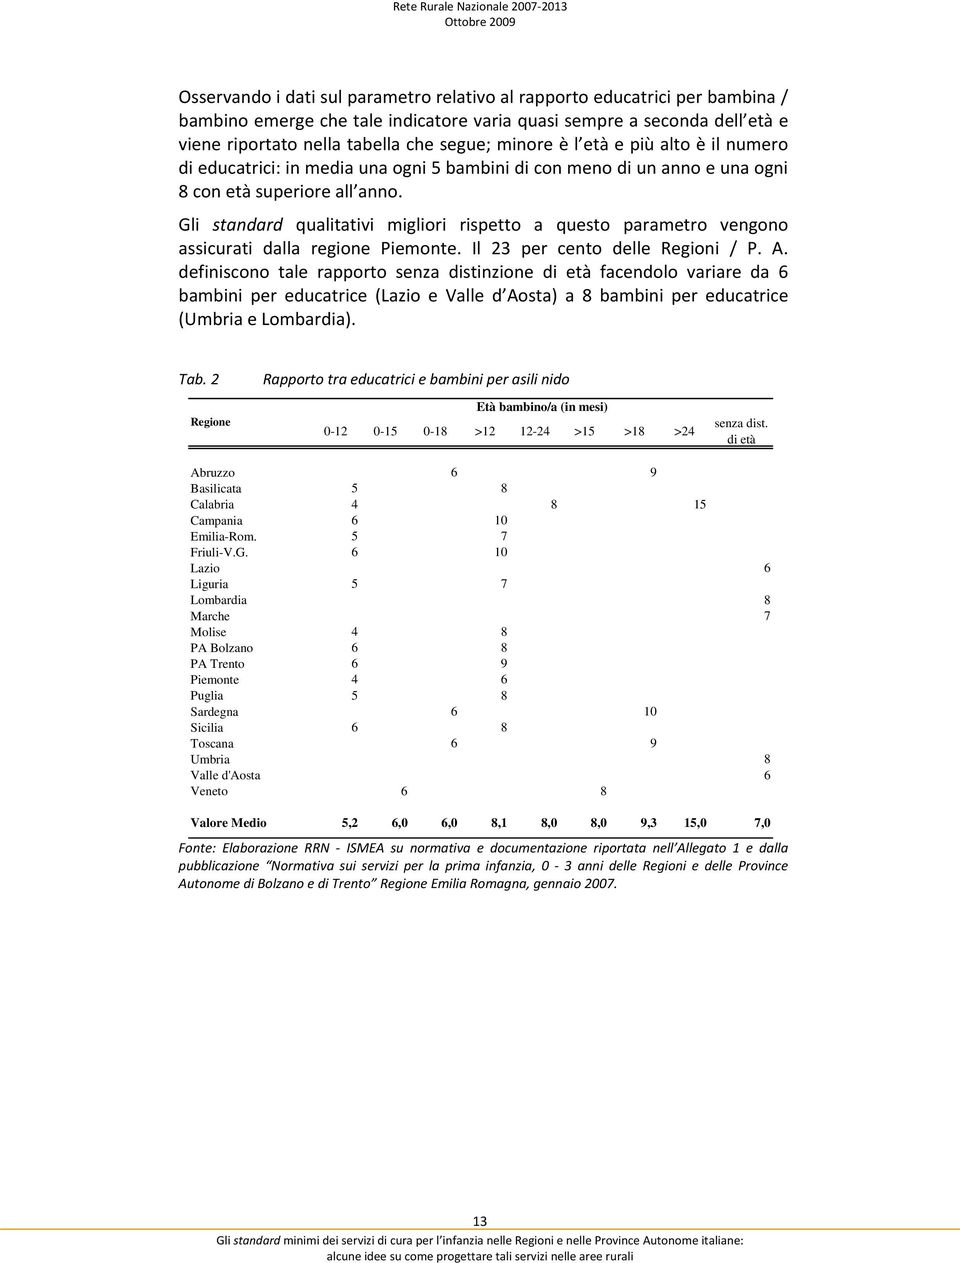 Gli standard qualitativi migliori rispetto a questo parametro vengono assicurati dalla regione Piemonte. Il 23 per cento delle Regioni / P. A.